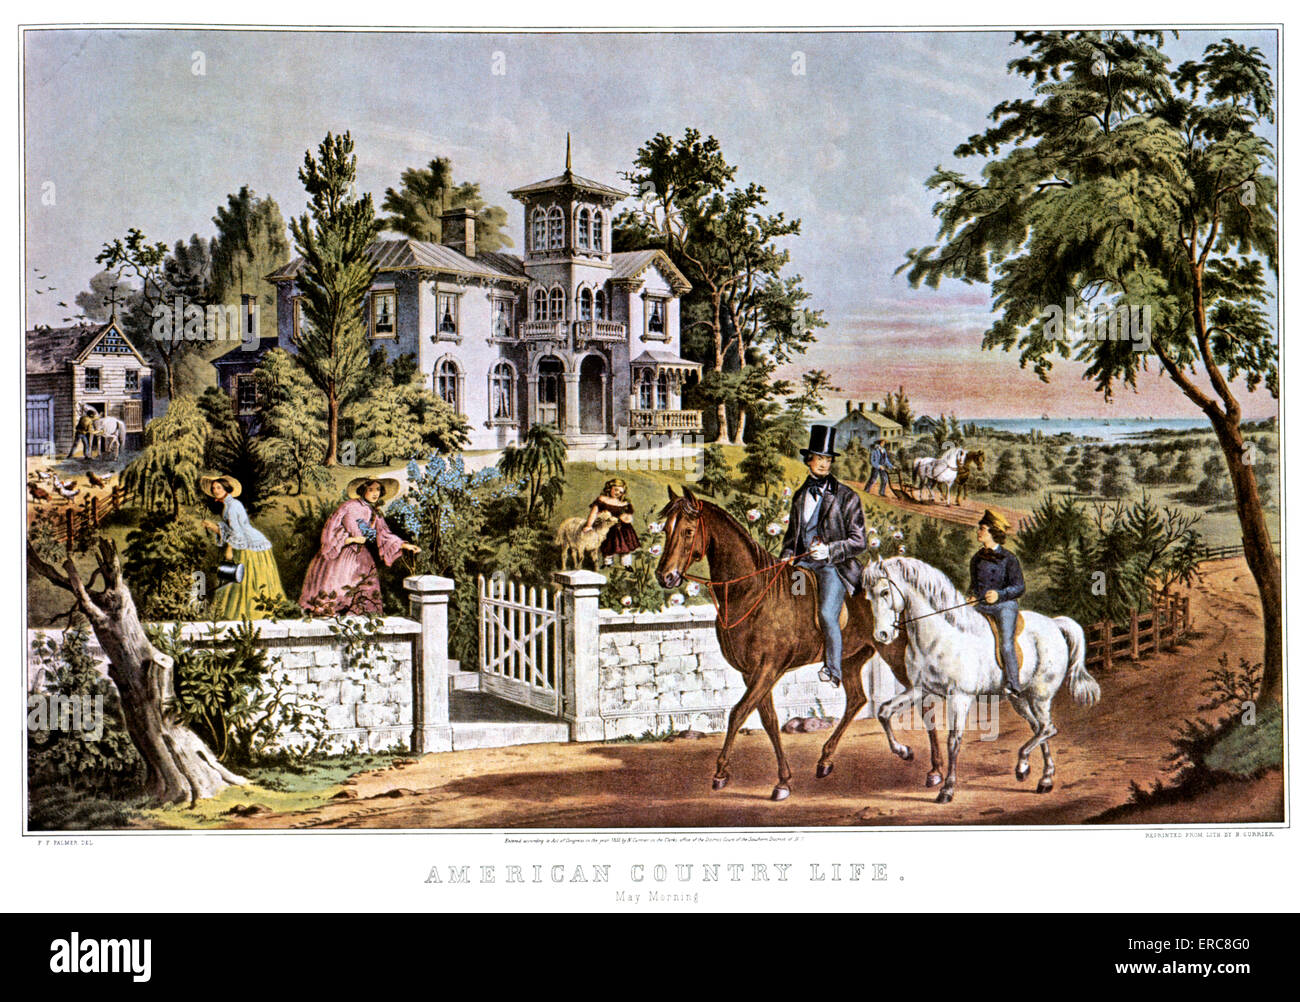 1850ER JAHRE AMERIKANISCHE LANDLEBEN - MAI MORGEN - CURRIER & IVES LITHOGRAPHIE - 1855 Stockfoto